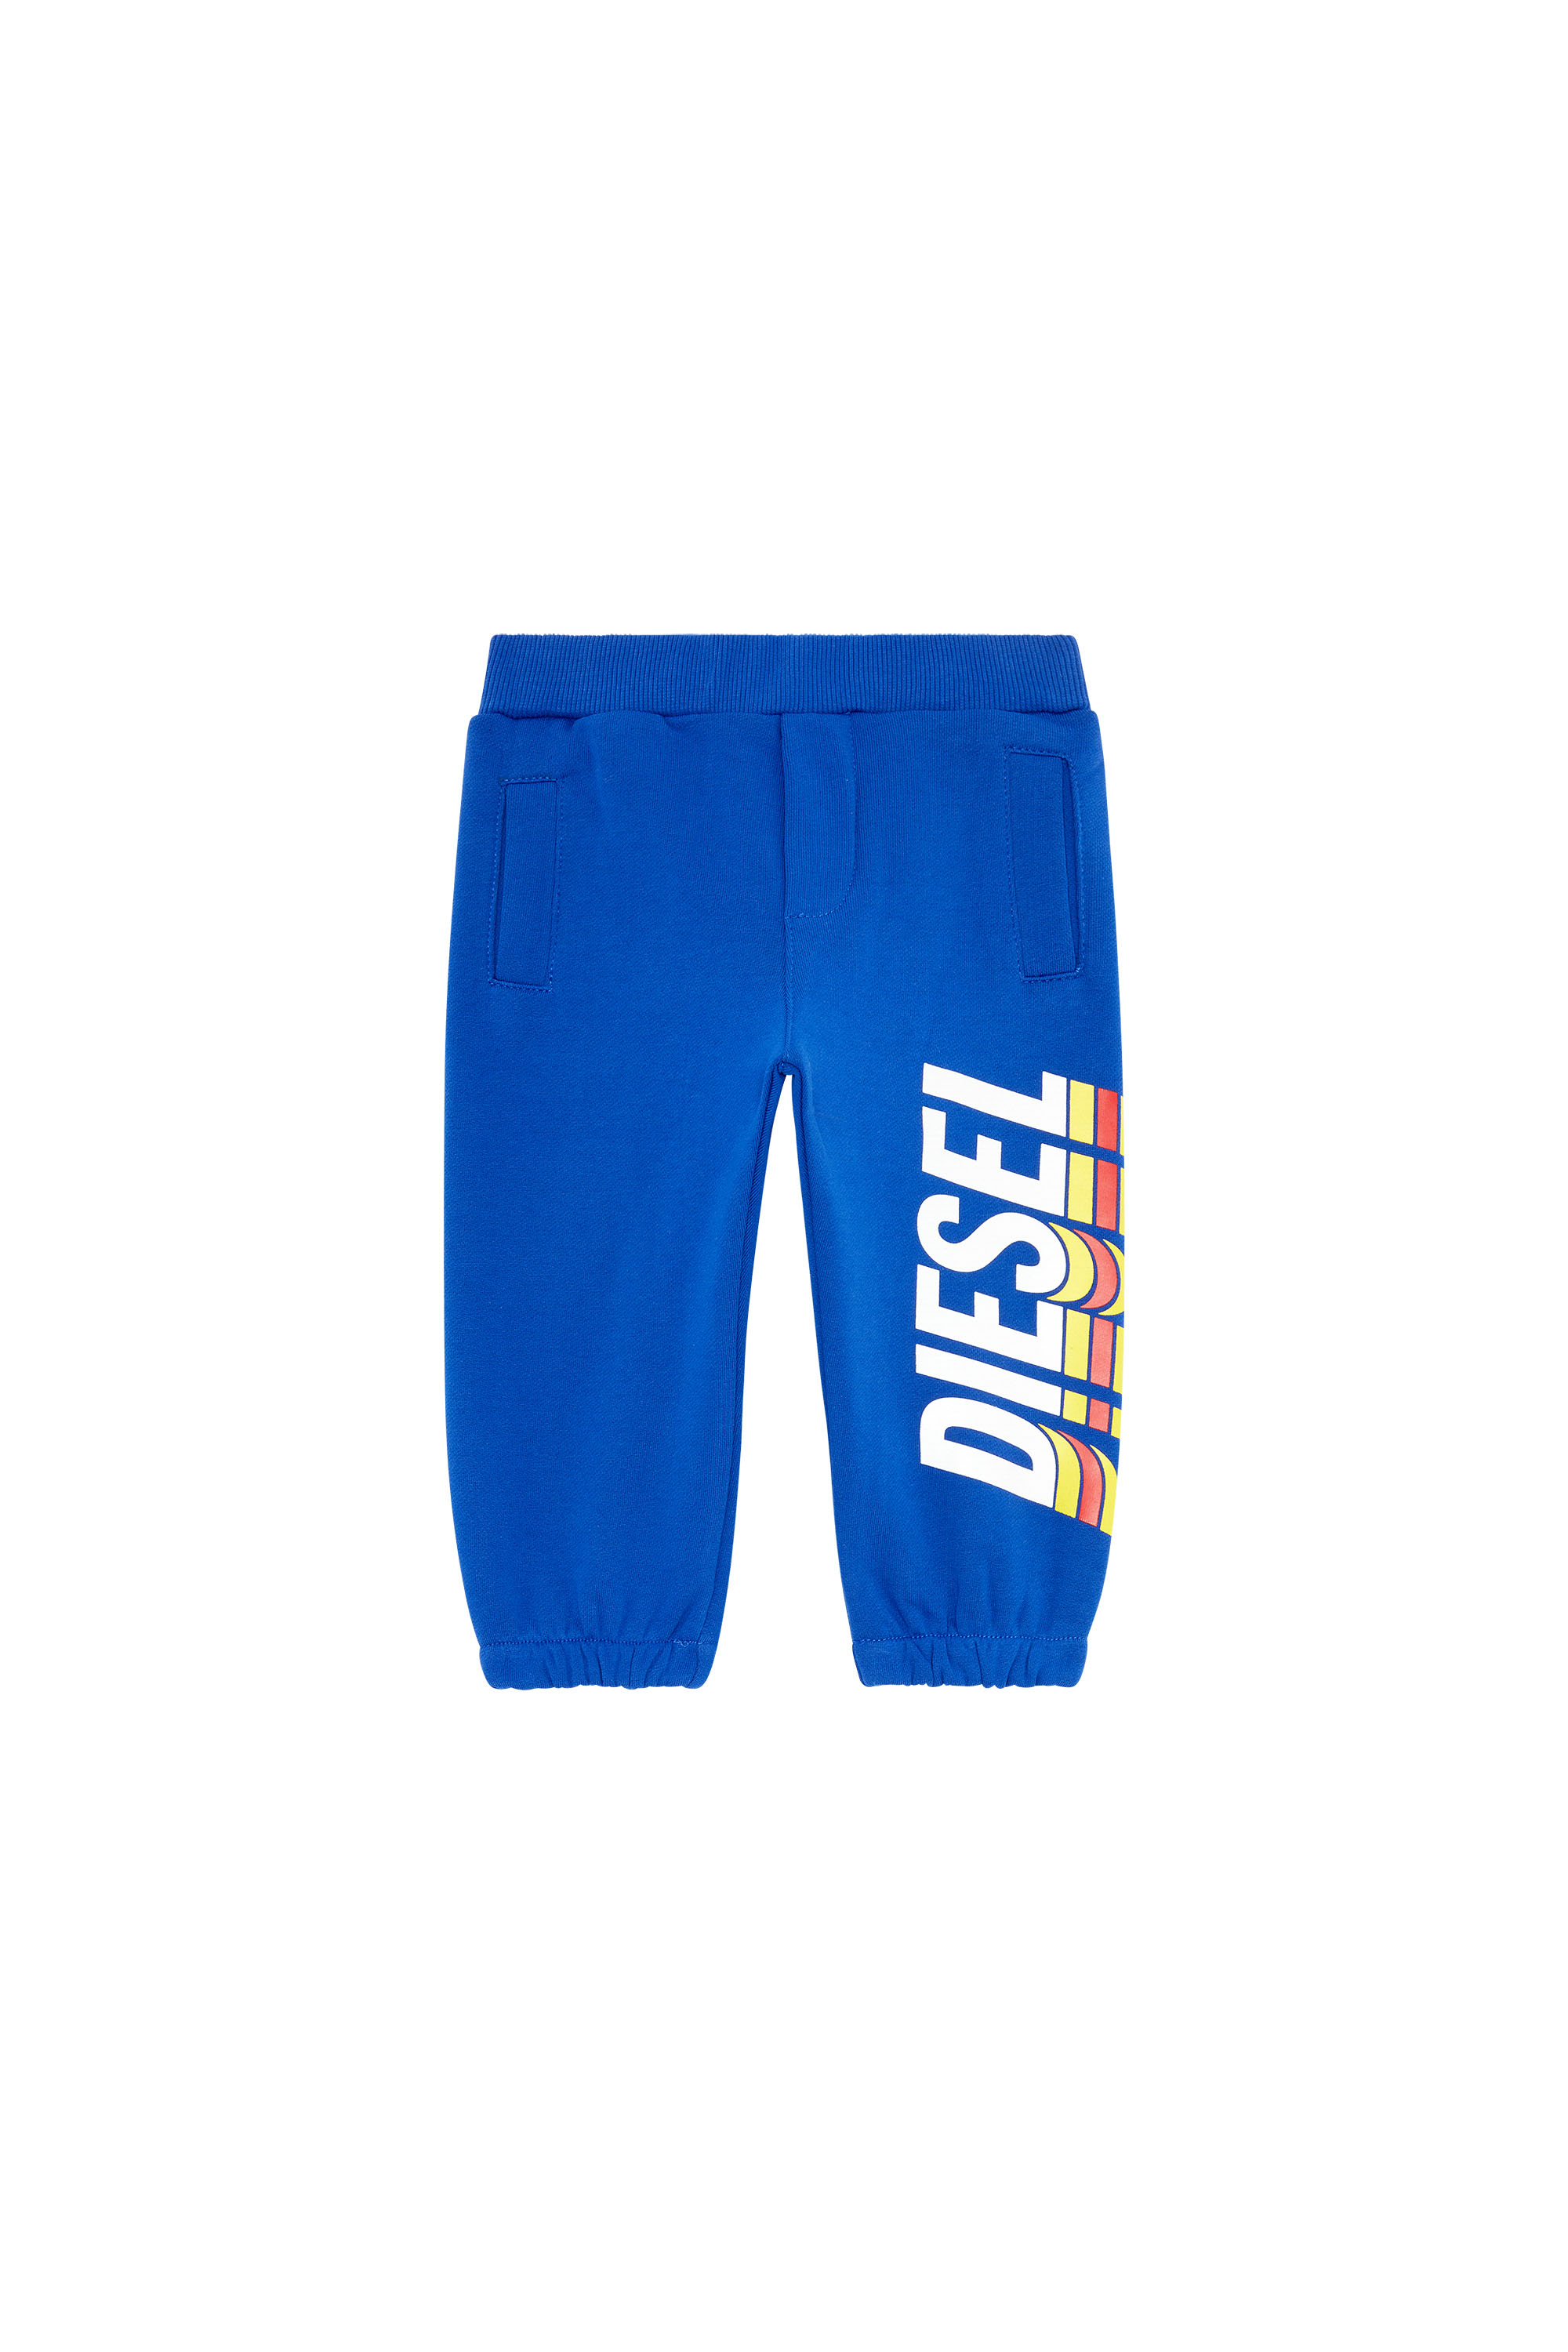 Diesel - Pantalones deportivos con estampado en grande del logotipo - Pantalones - Hombre - Azul marino